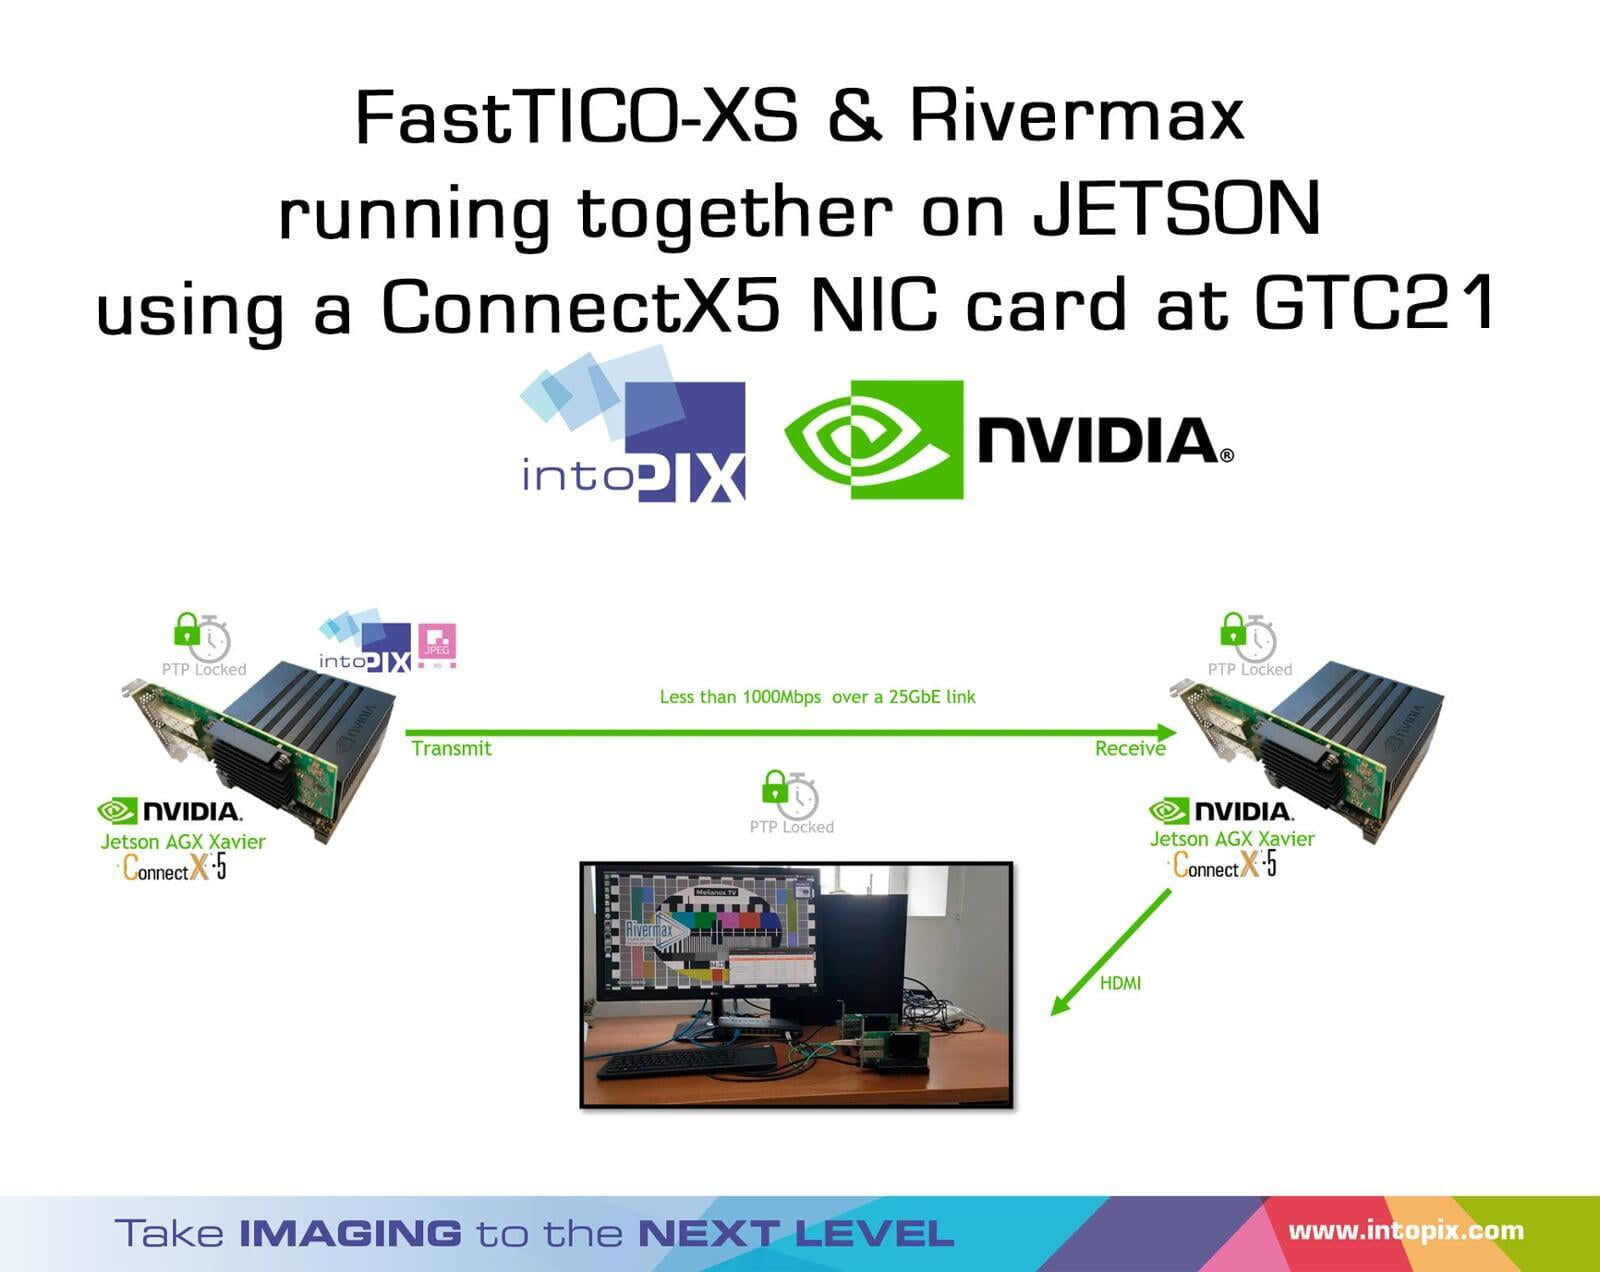 FastTicoXS和Rivermax在GTC21上使用ConnectX5网卡在JETSON上一起运行。